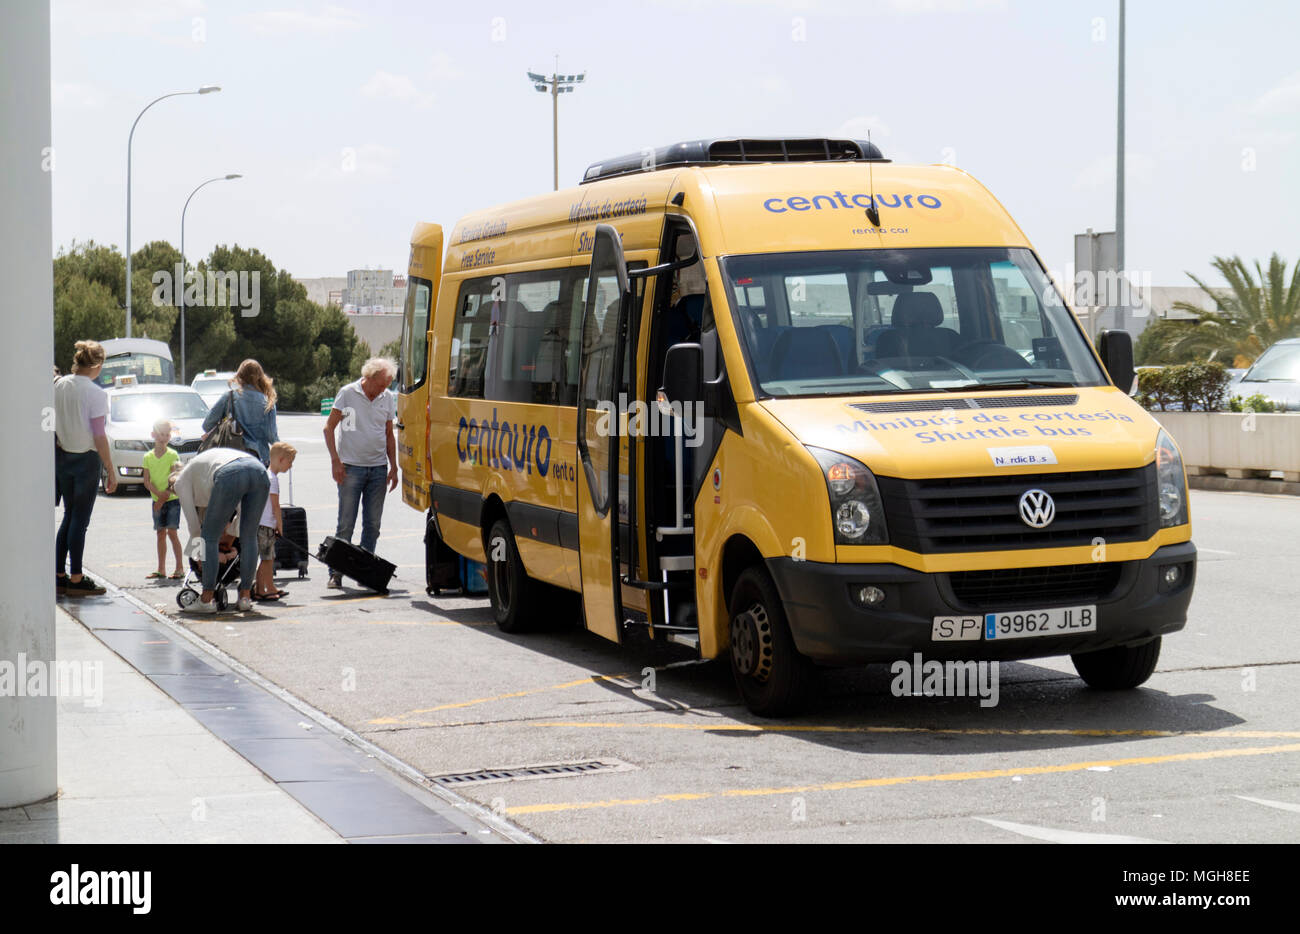 Palma Aeroporto Internazionale, Mallorca, Spagna, noleggio auto navetta facendo scendere i passeggeri al terminal delle partenze. Foto Stock